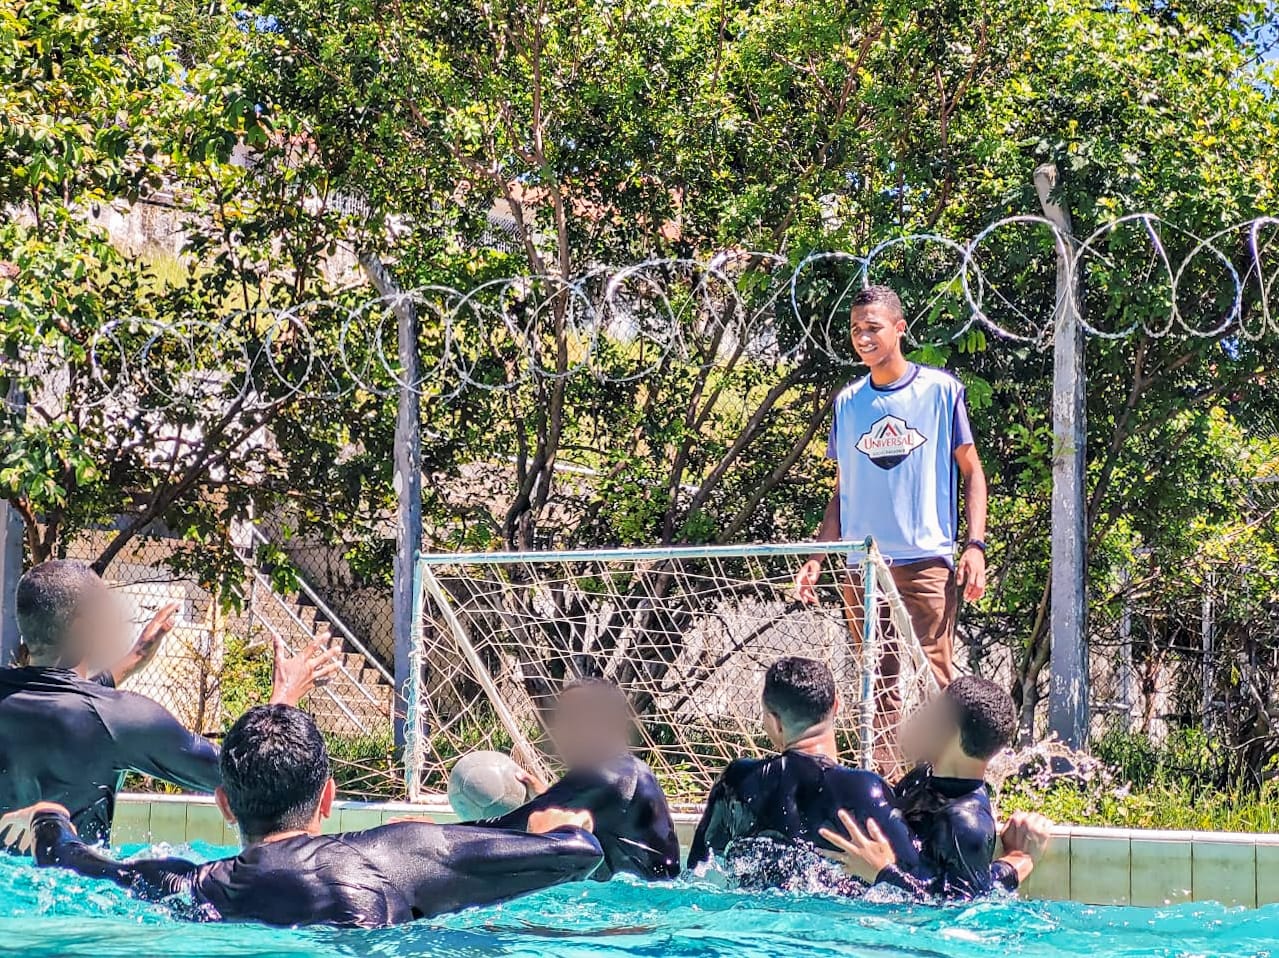 Universal Socioeducativo realiza aulas de natação em unidade de reeducação social no Rio de Janeiro